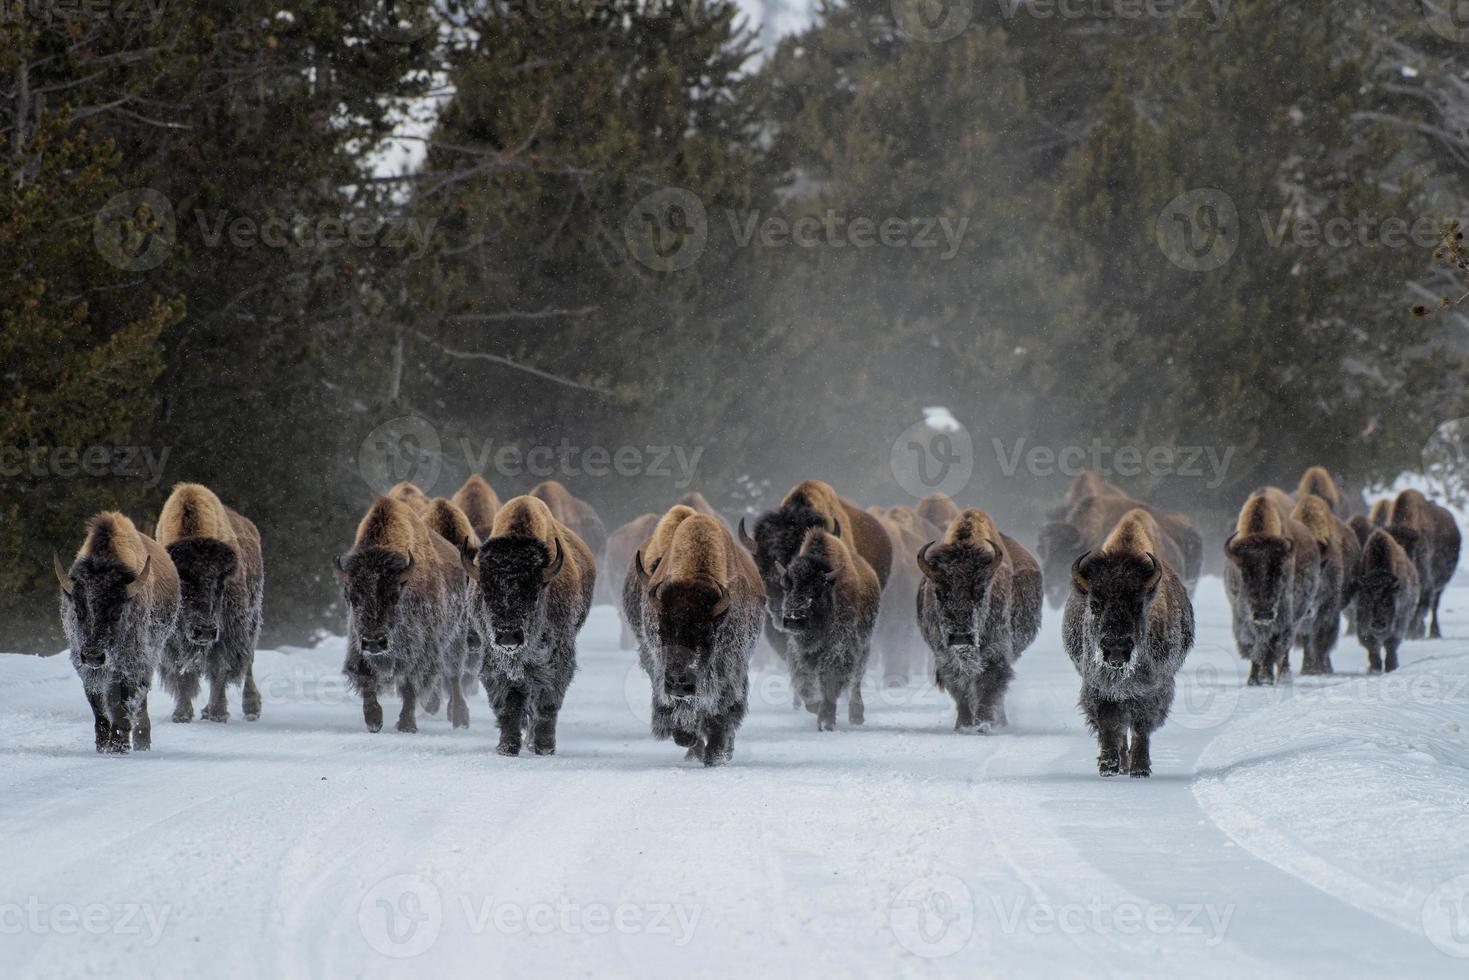 flock amerikansk bison, Yellowstone nationalpark. vinterscen. foto